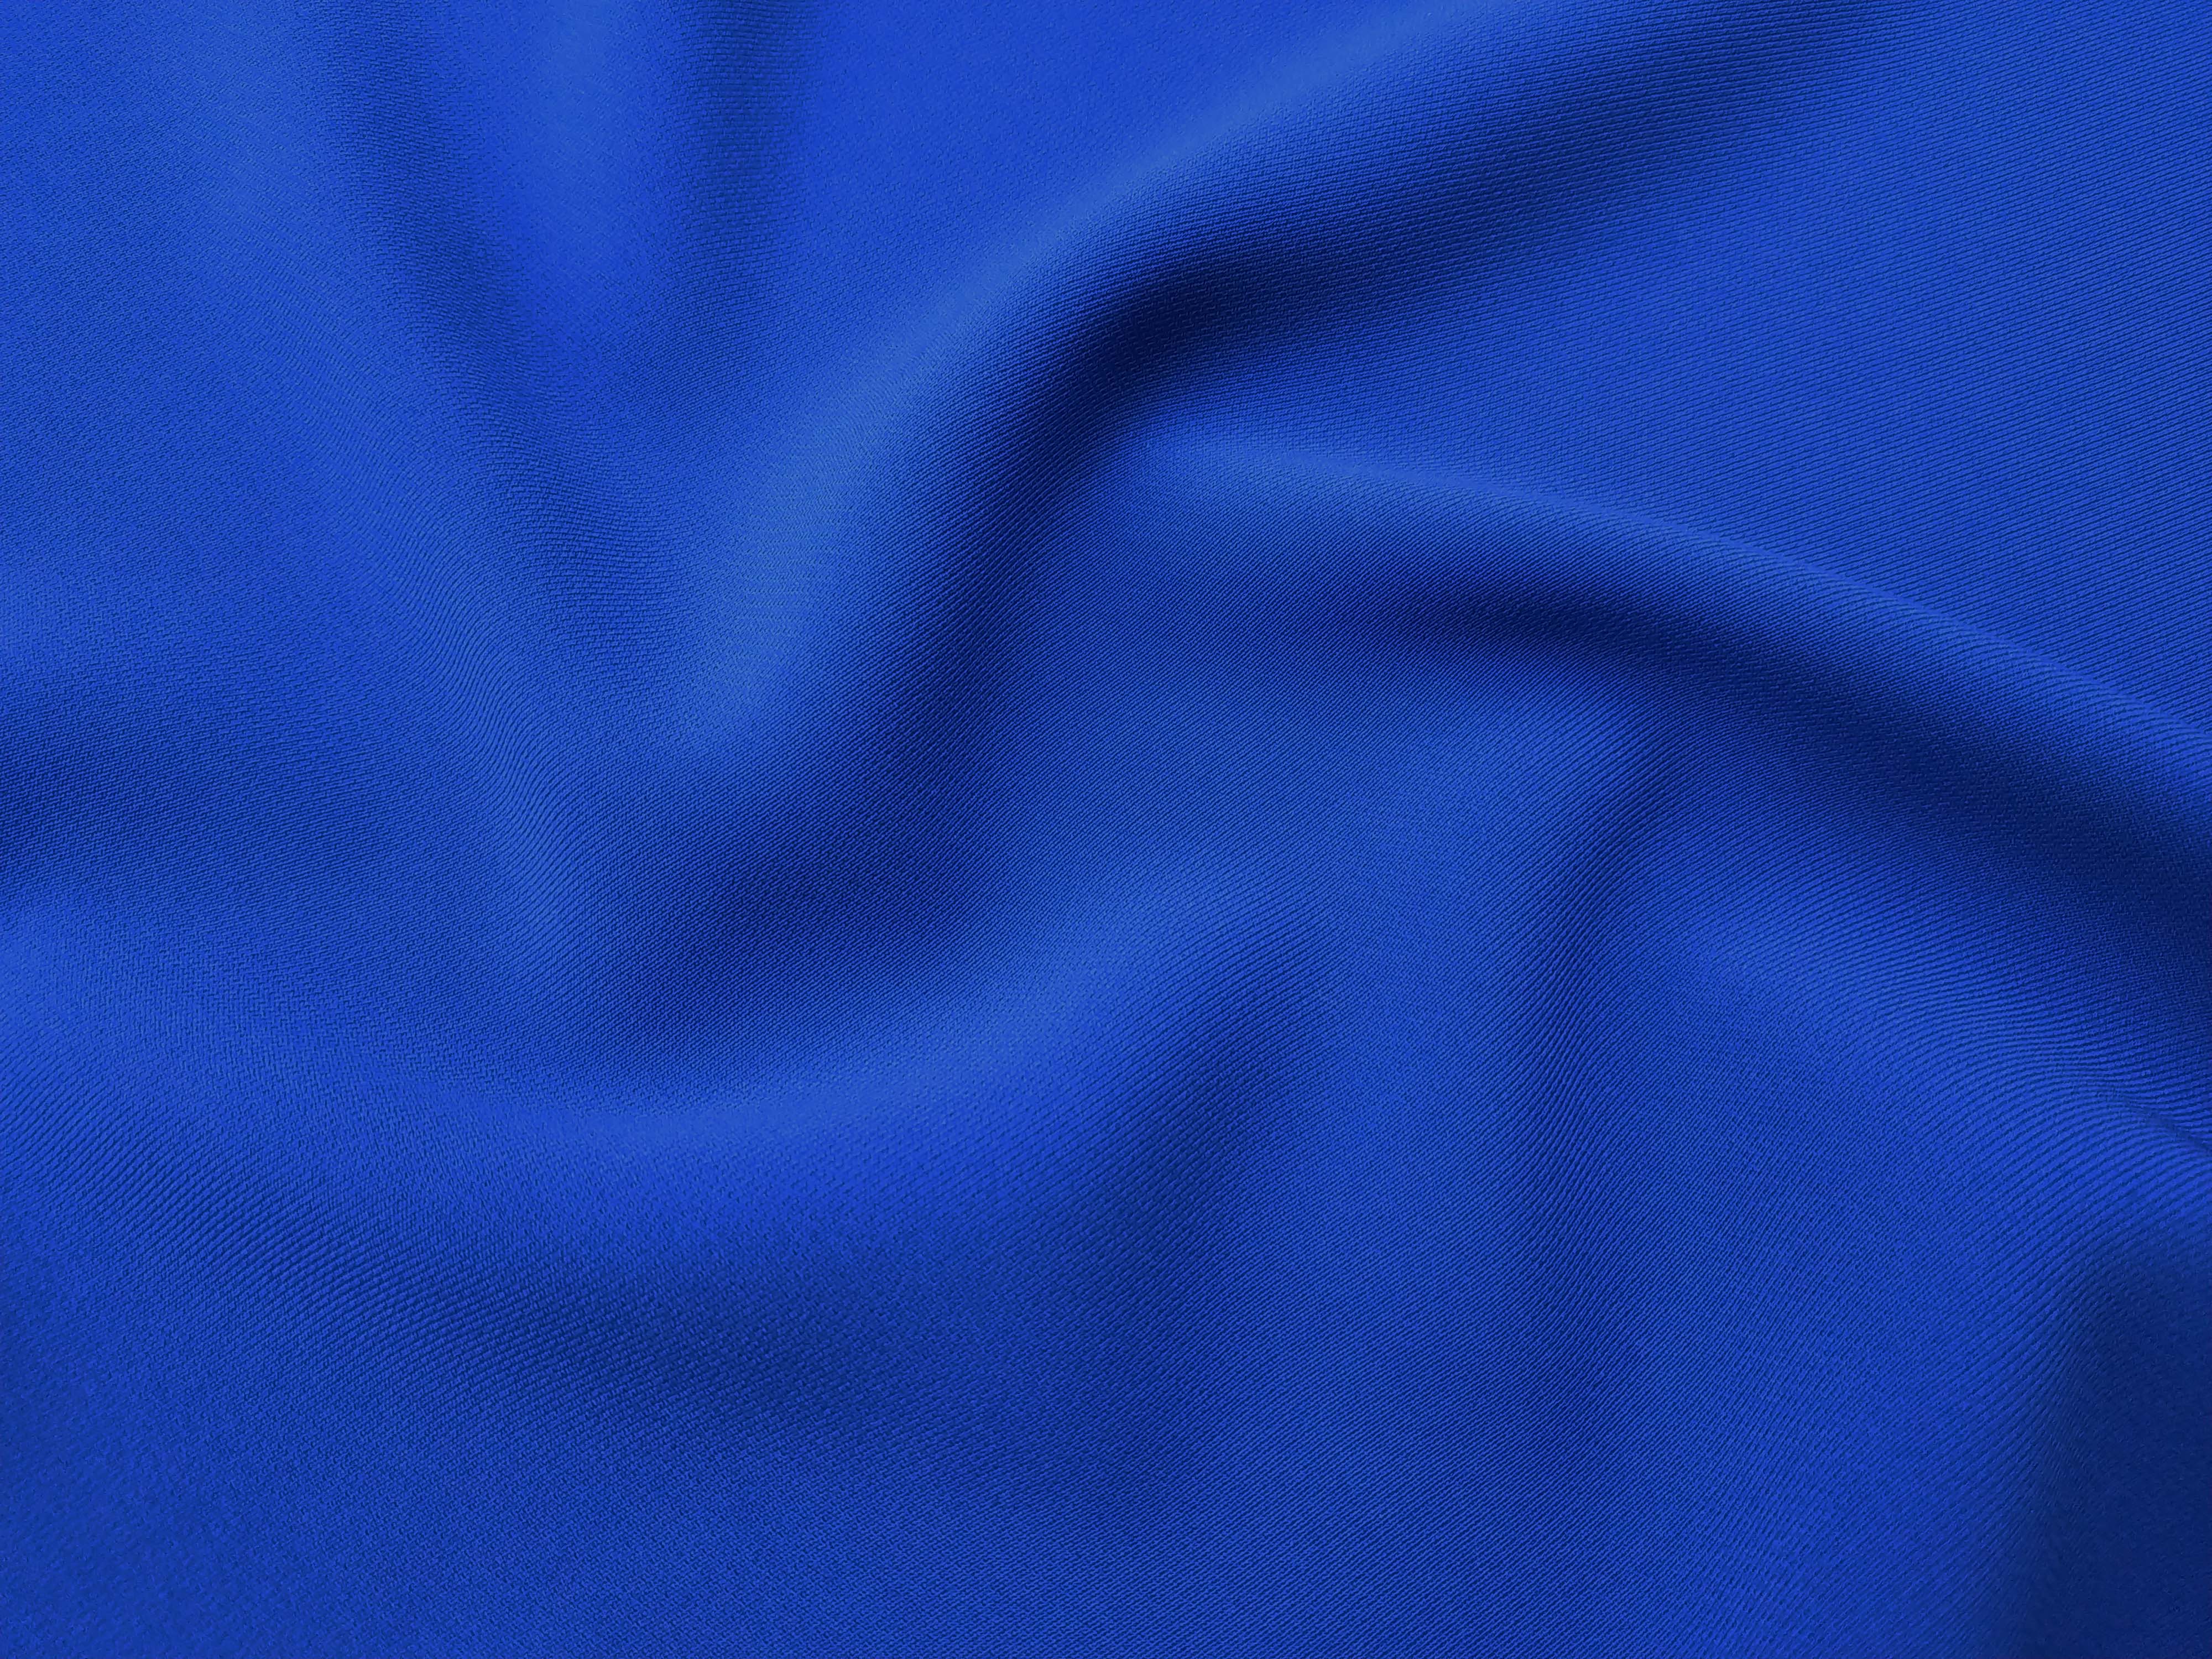 Материя складка. Синий цвет ткани. Голубая ткань. Темно синяя ткань. Синяя атласная ткань.